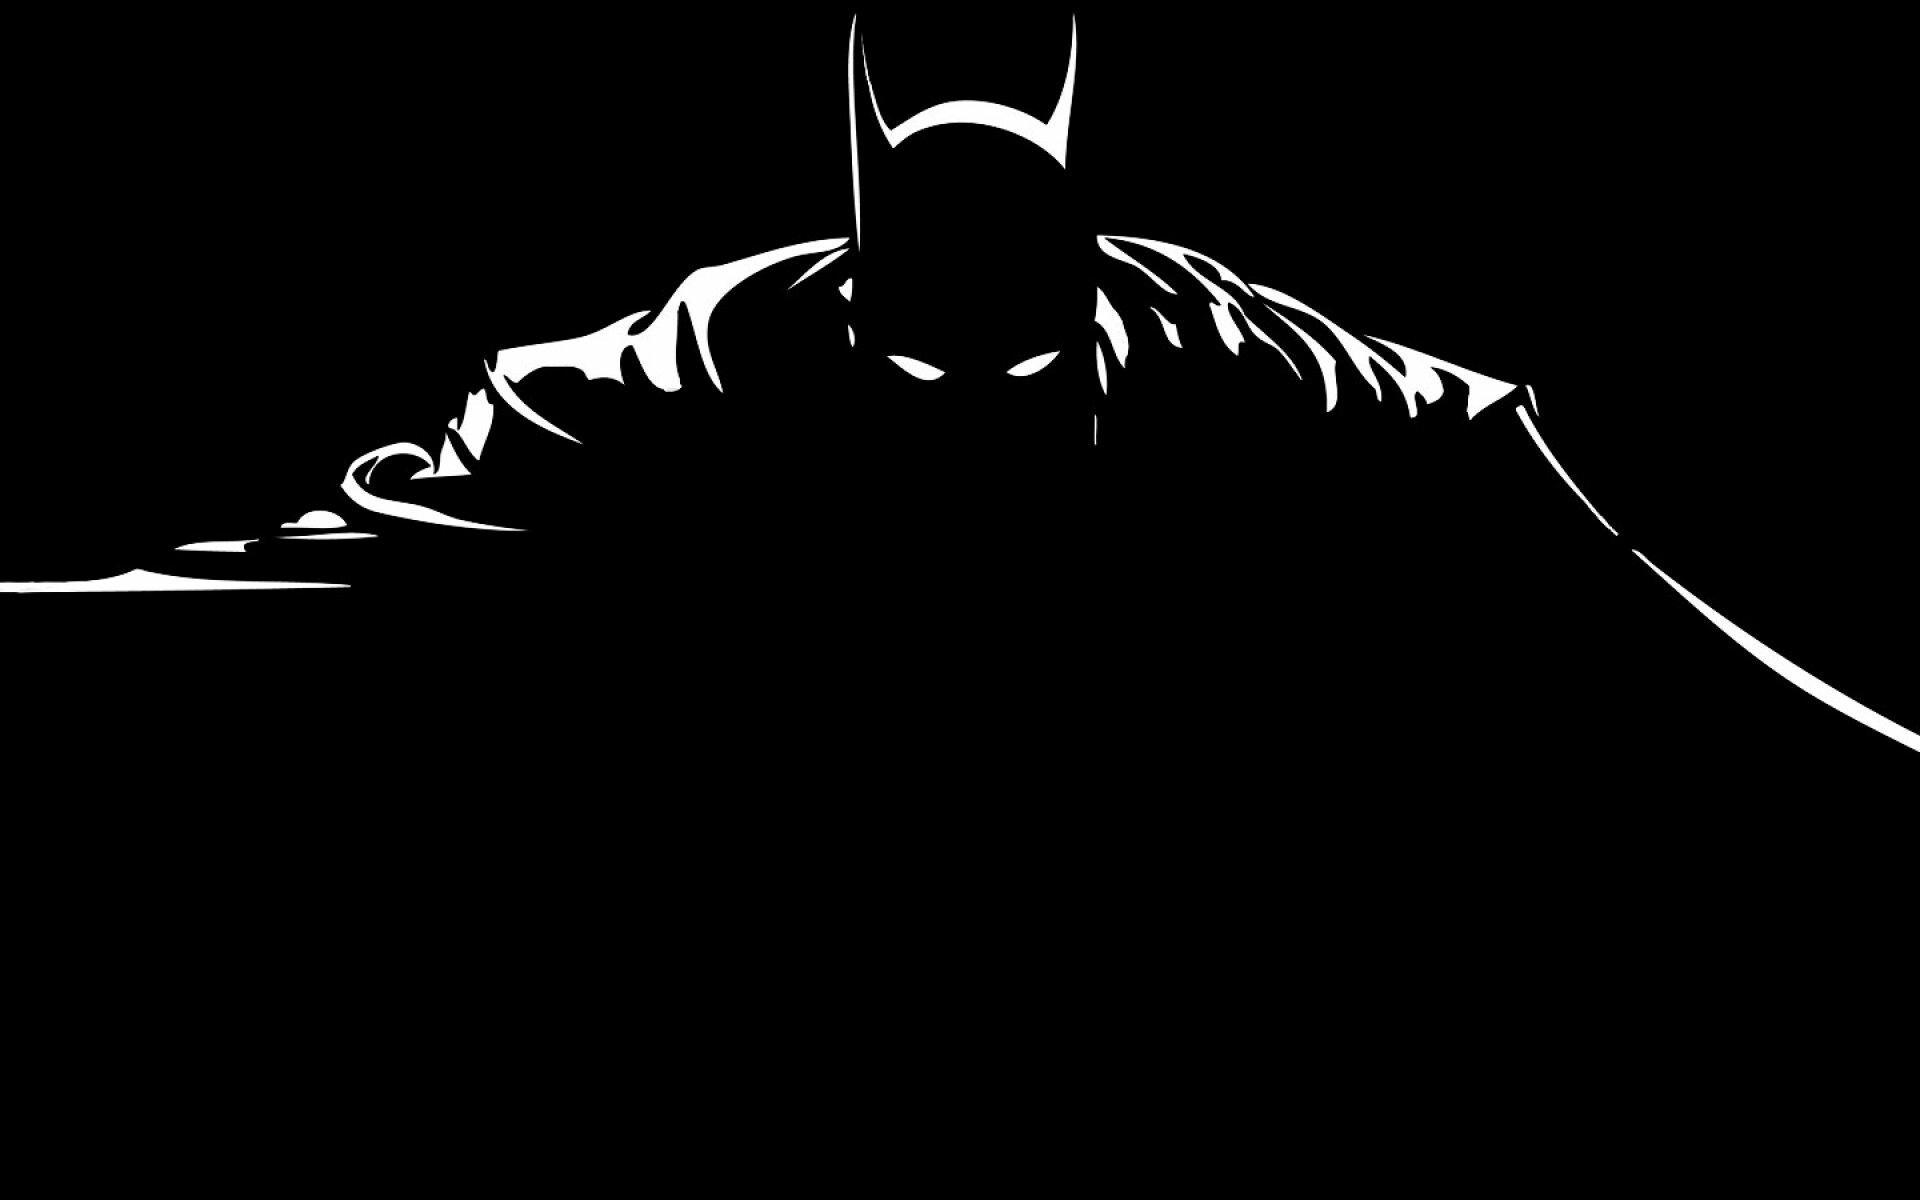 batman hd wallpaper 1080p